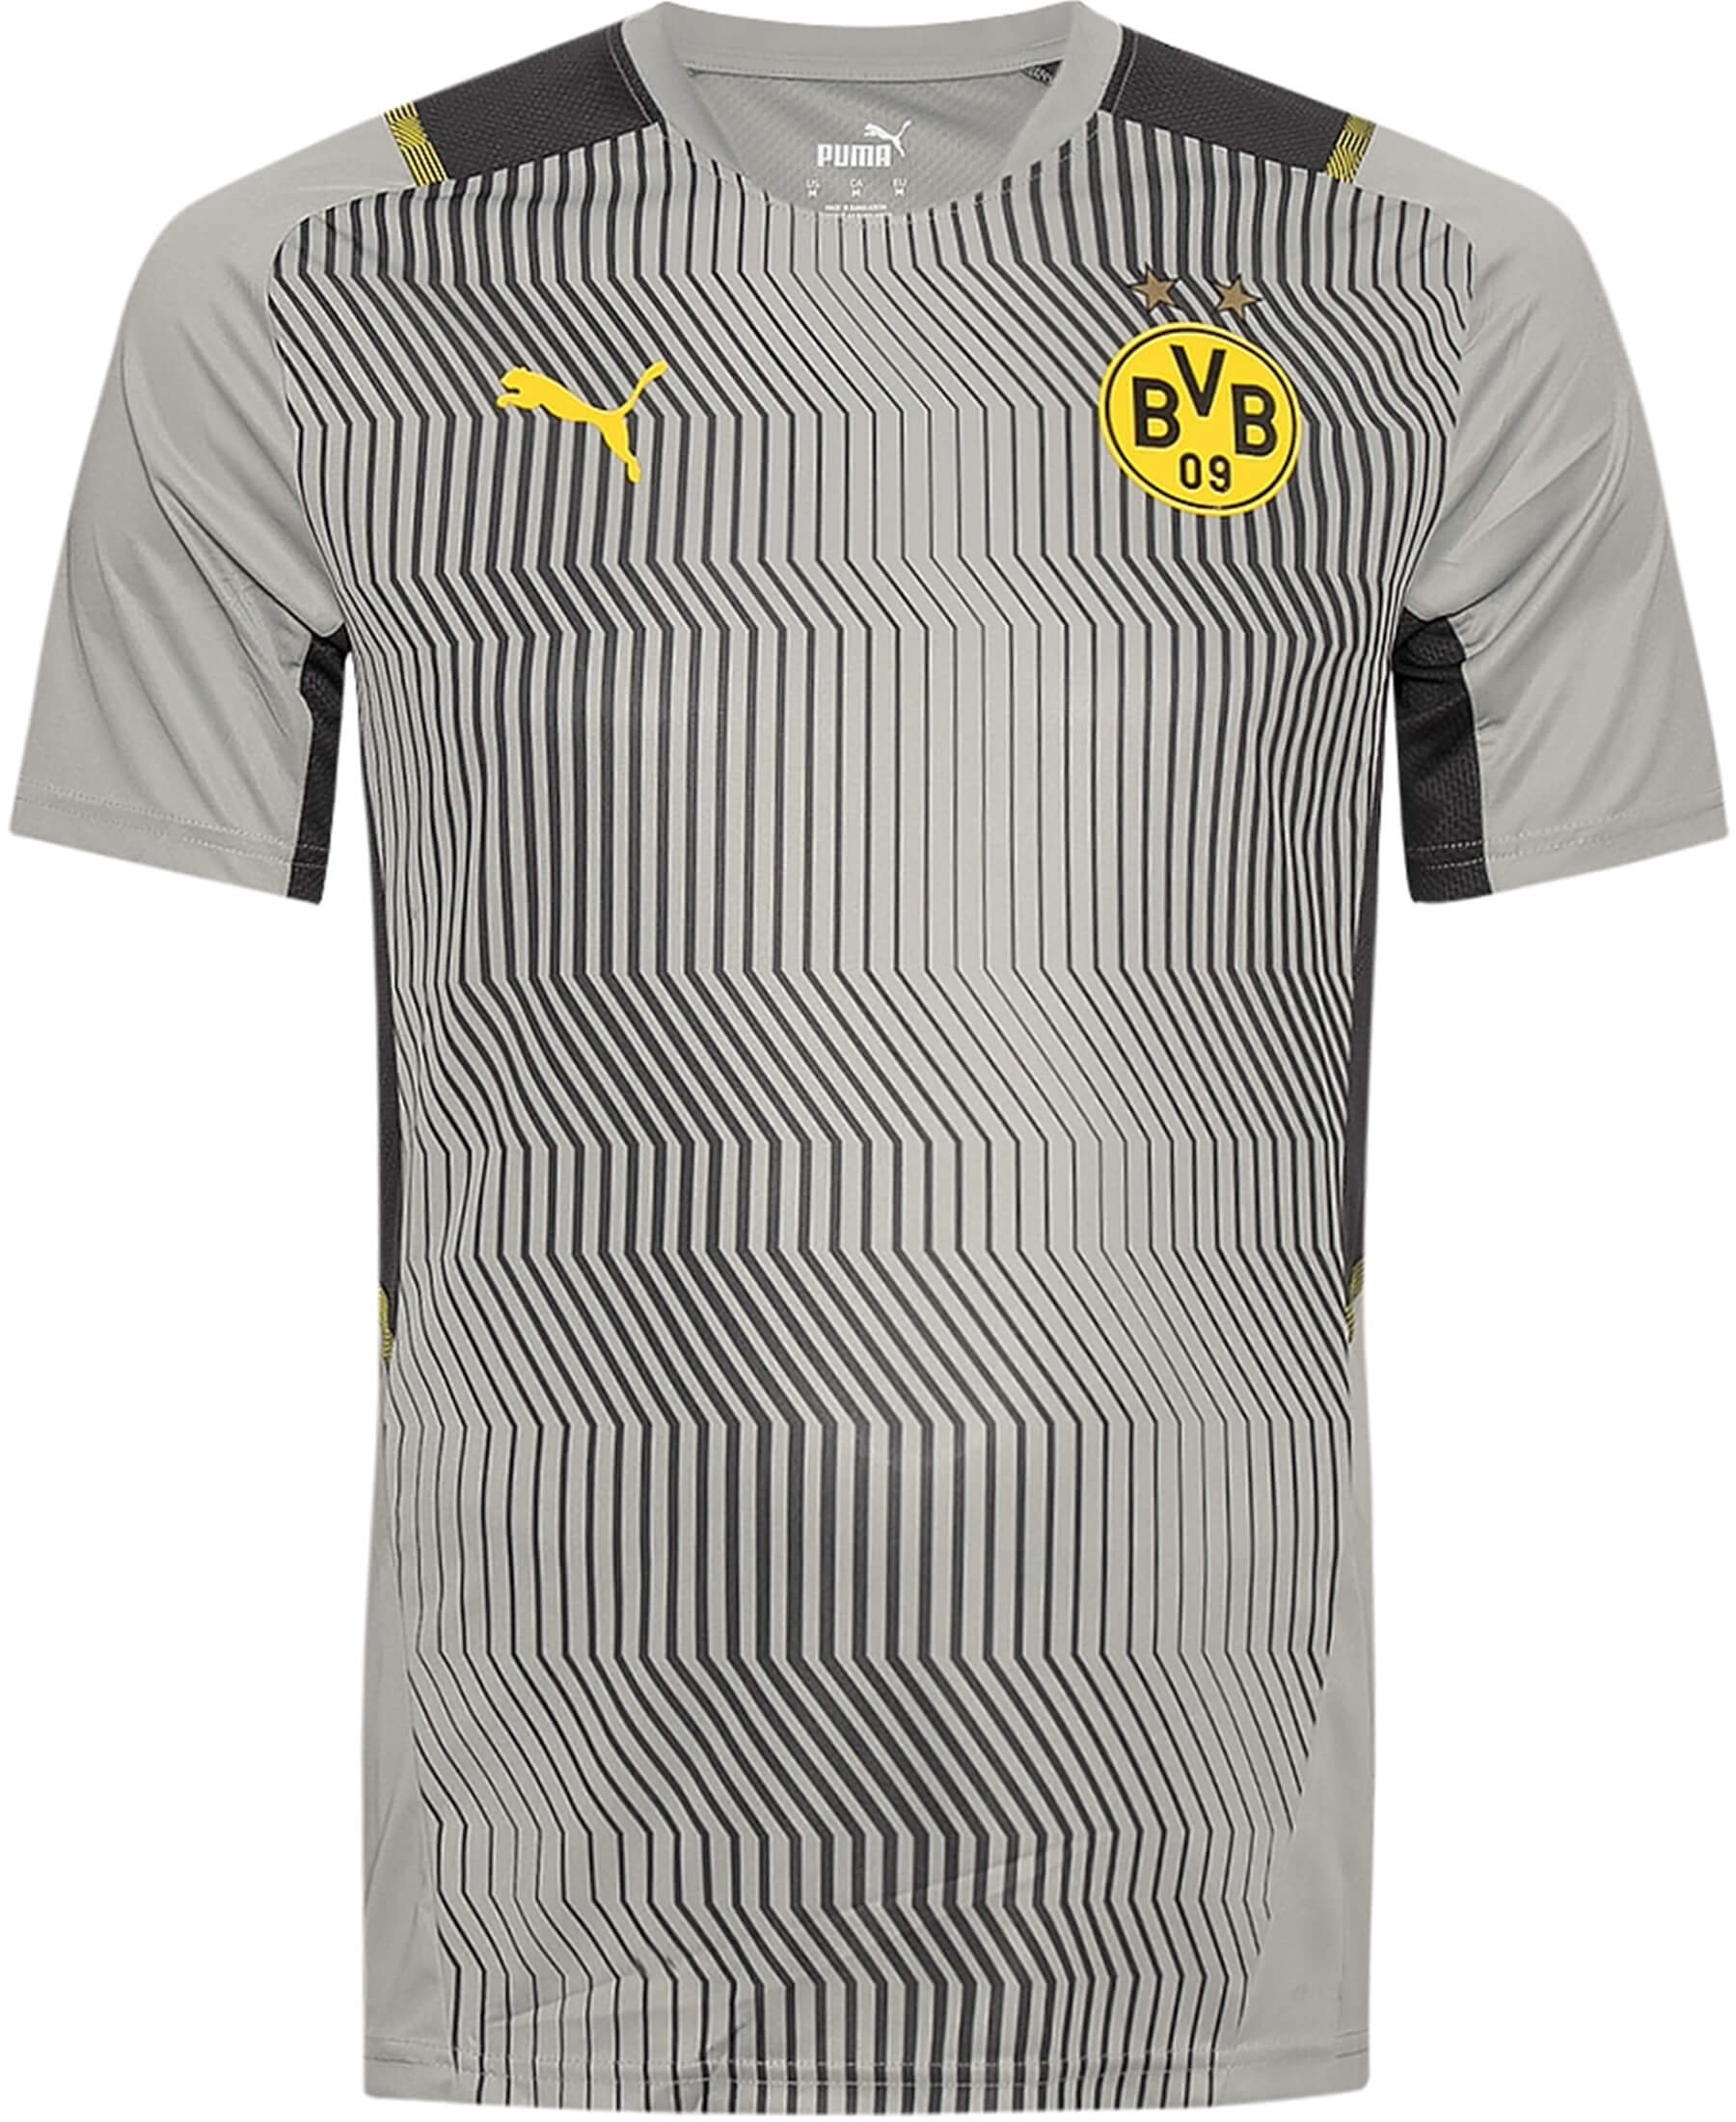 Entdecke das PUMA Borussia Dortmund BVB Trainingsshirt bei SHOP4TEAMSPORT. Dieses hochwertige Trainingsshirt ist perfekt für Fans, die den Verein unterstützen möchten. Mit dem offiziellen BVB-Logo und dynamischem Design zeigt dieses Shirt Fußballbegeisterung. Das atmungsaktive Material sorgt für angenehmen Tragekomfort während des Trainings oder im Alltag. Die optimale Passform und hohe Funktionalität machen dieses Shirt zum Must-Have für jeden BVB-Anhänger.